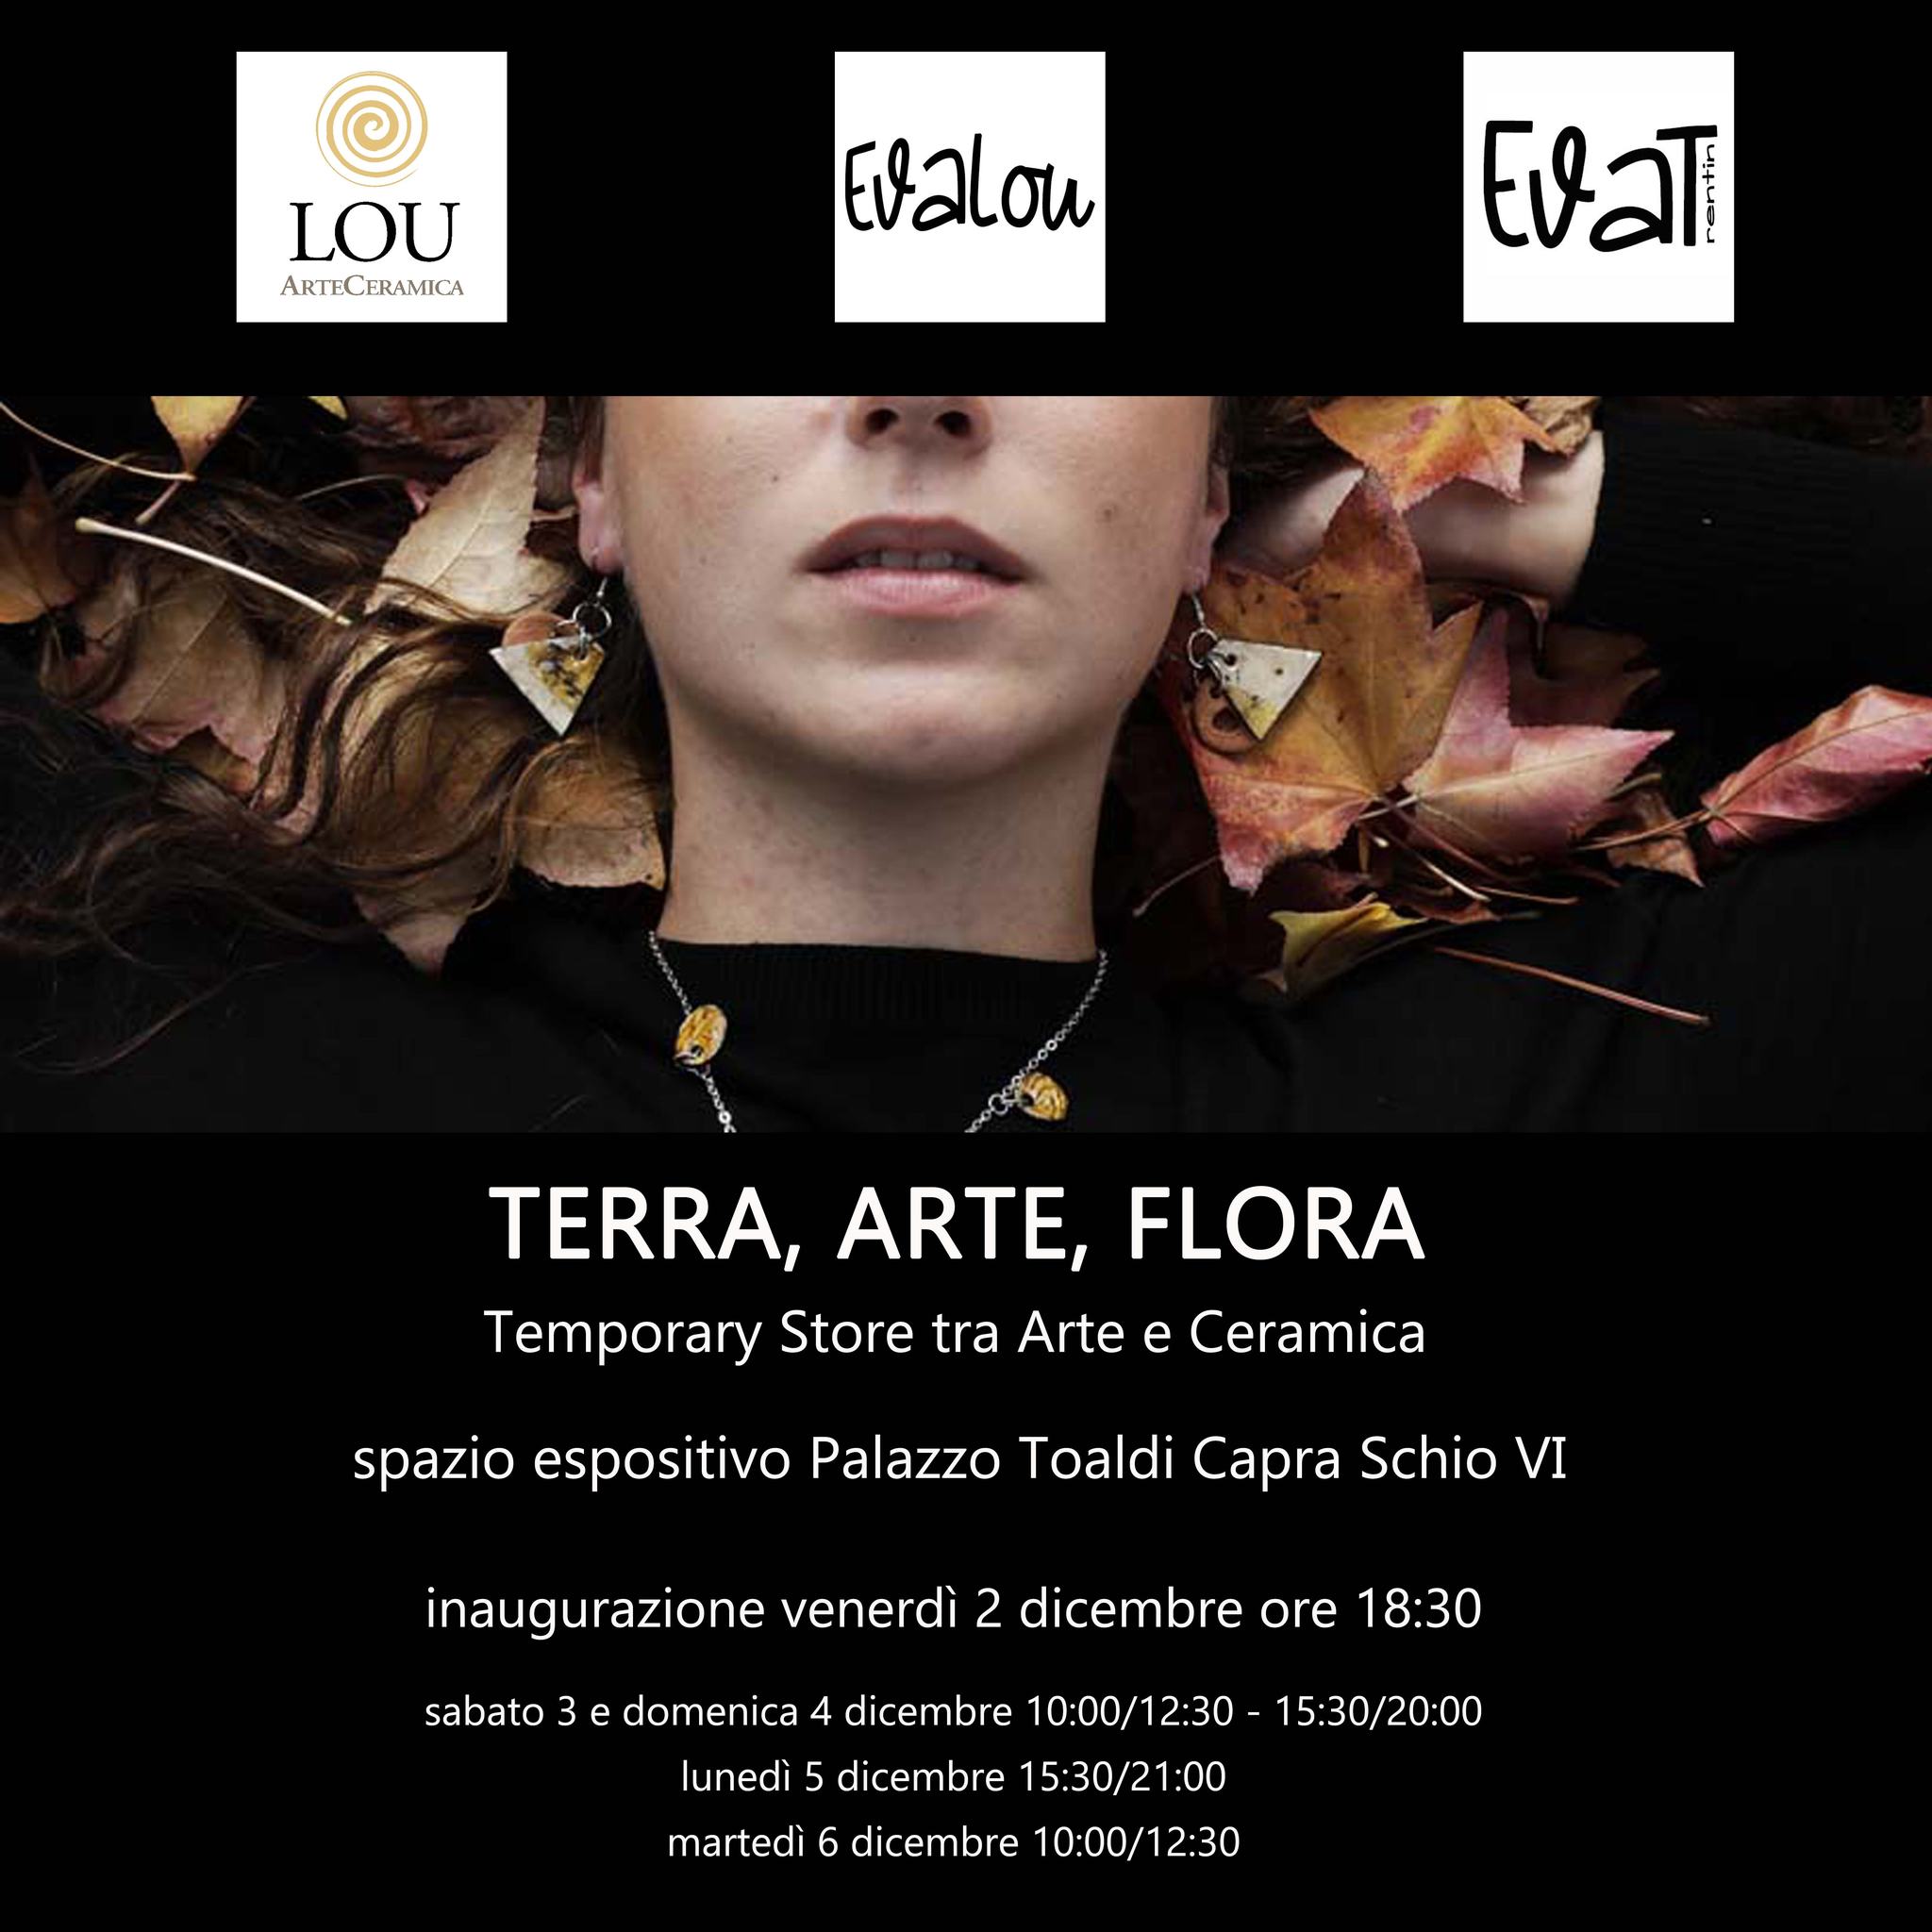 Terra, Arte, Flora - temporary store tra arte e ceramica